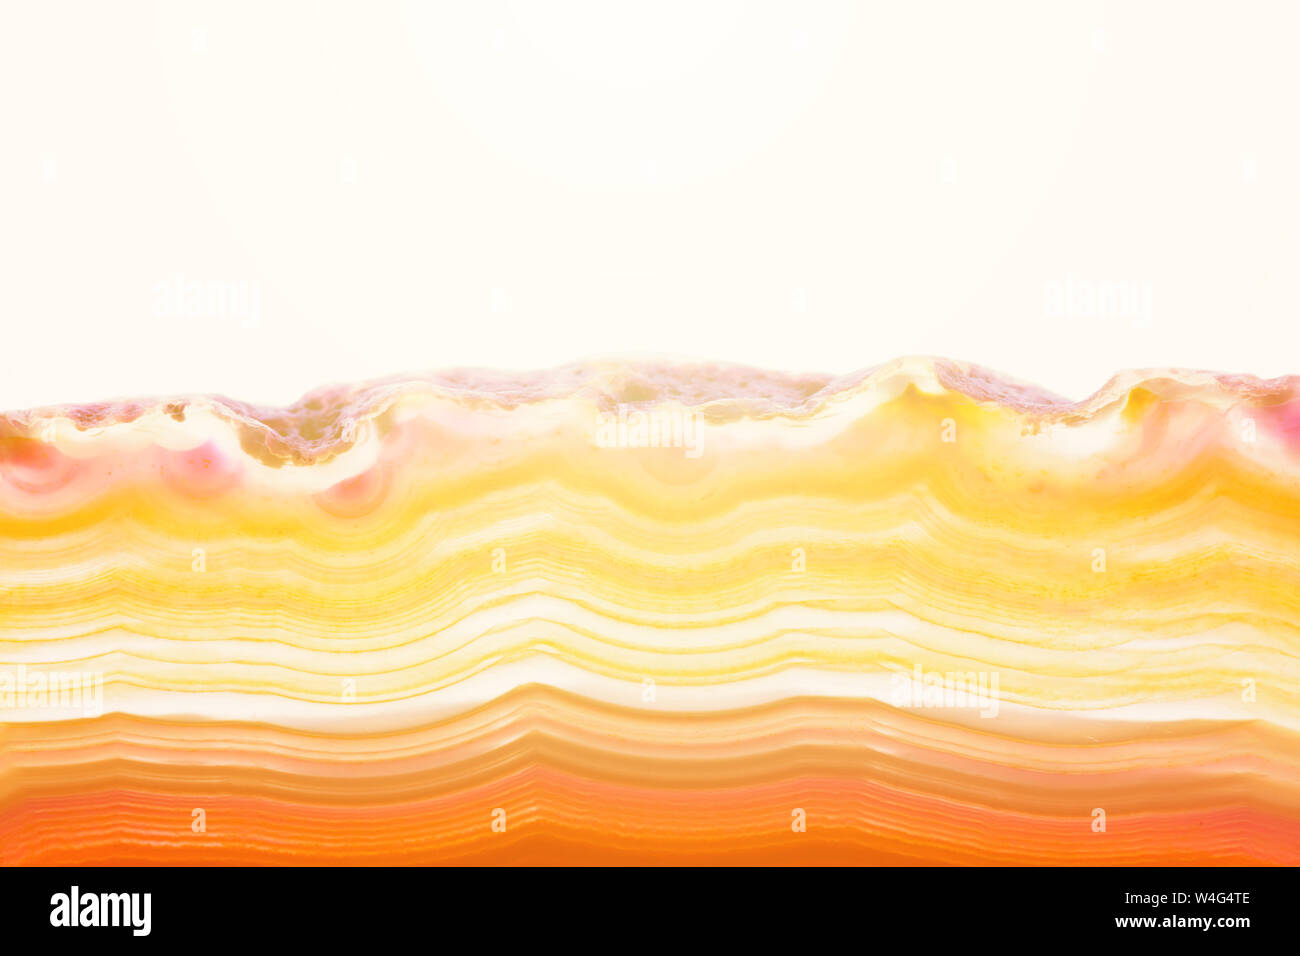 Sfondo astratto, arancione e giallo striato di agata minerale sezione trasversale con sunbeam isolati su sfondo bianco Foto Stock